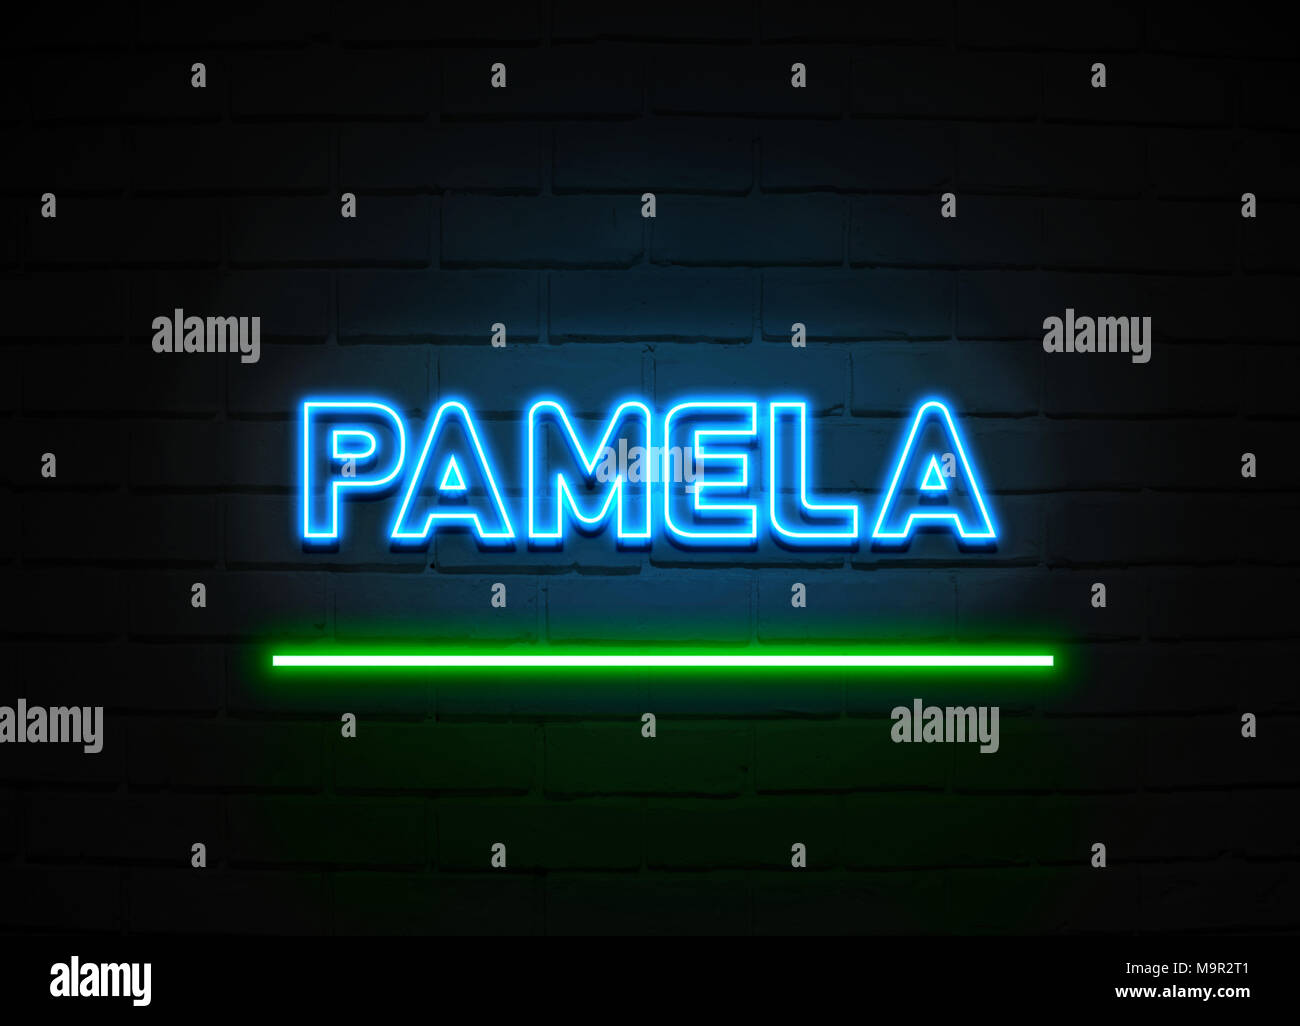 Pamela Leuchtreklame - glühende Leuchtreklame auf brickwall Wand - 3D-Royalty Free Stock Illustration dargestellt. Stockfoto